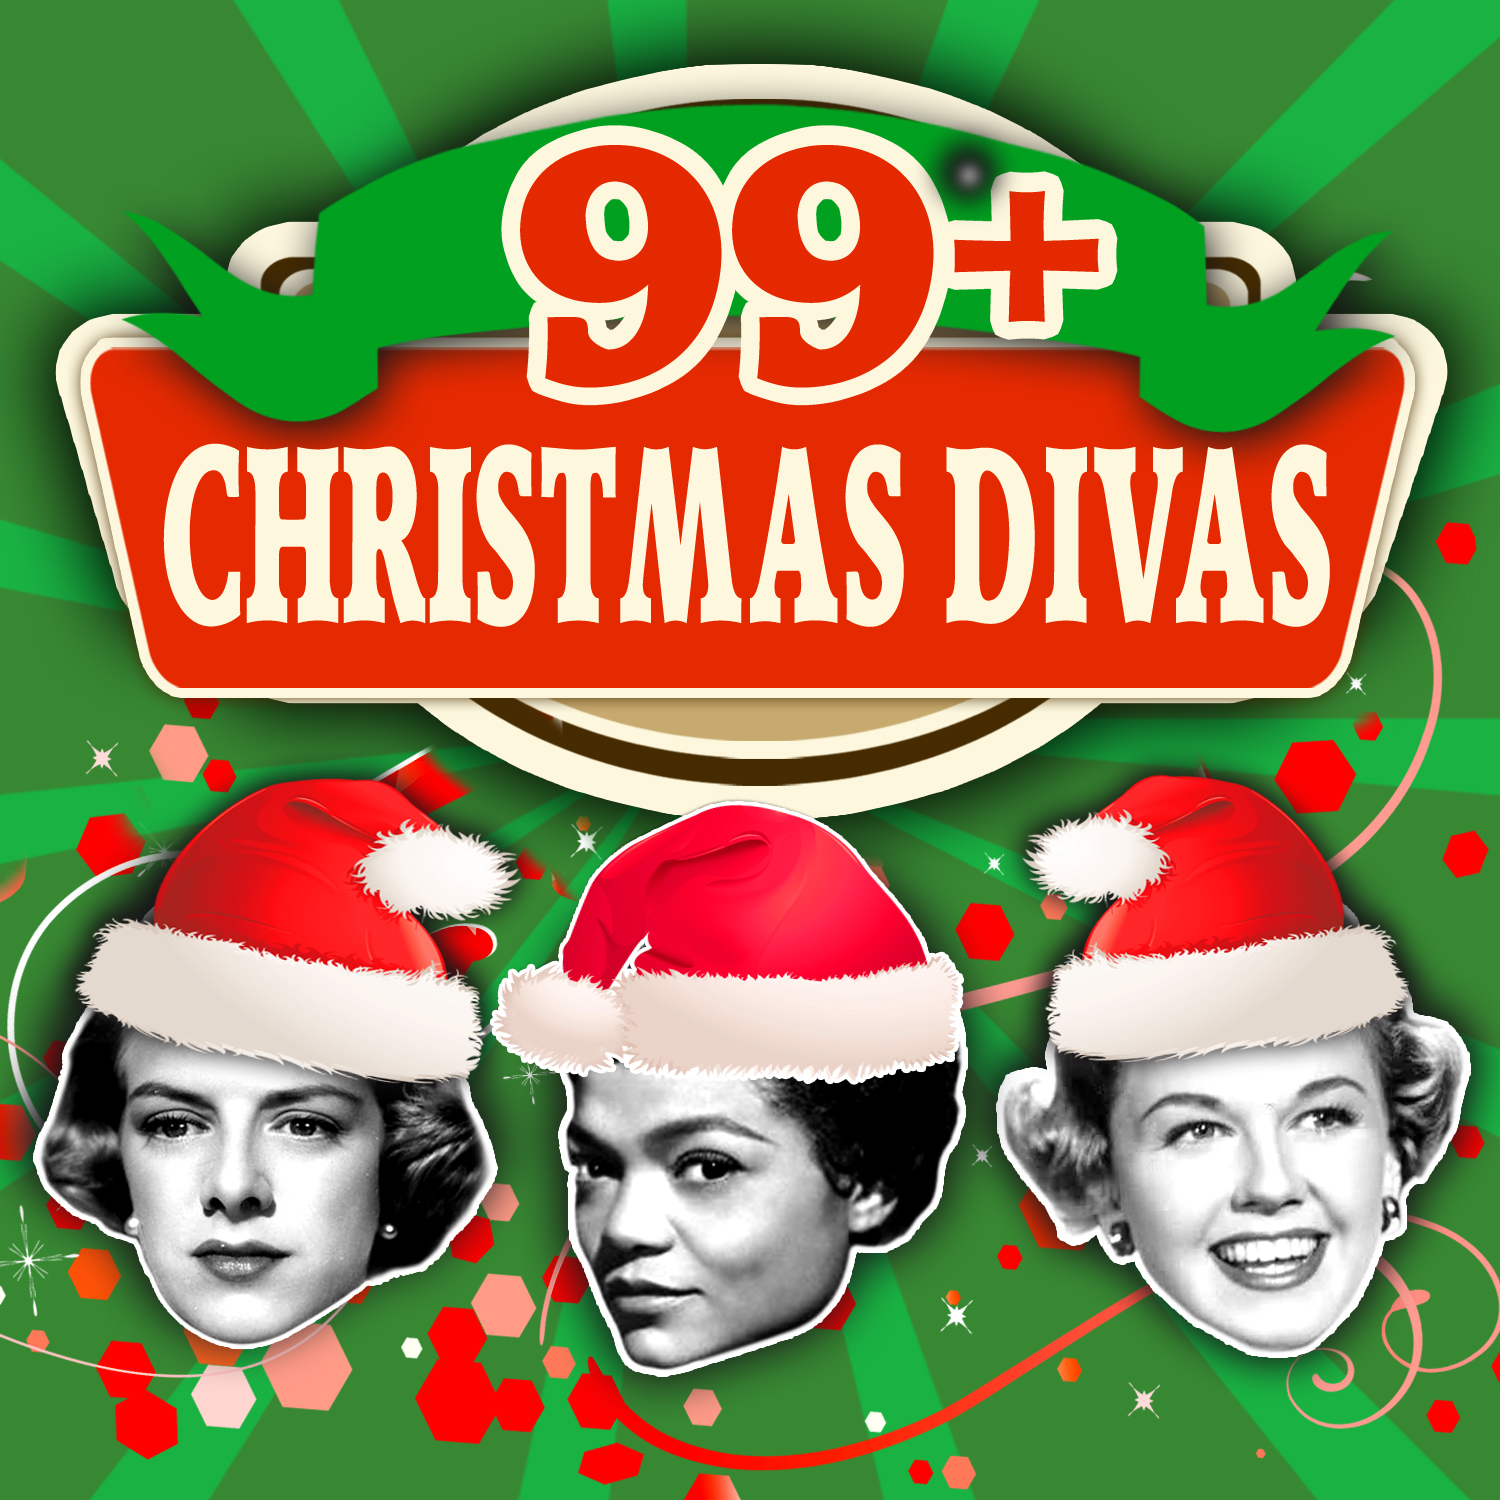 99+ Christmas Divas